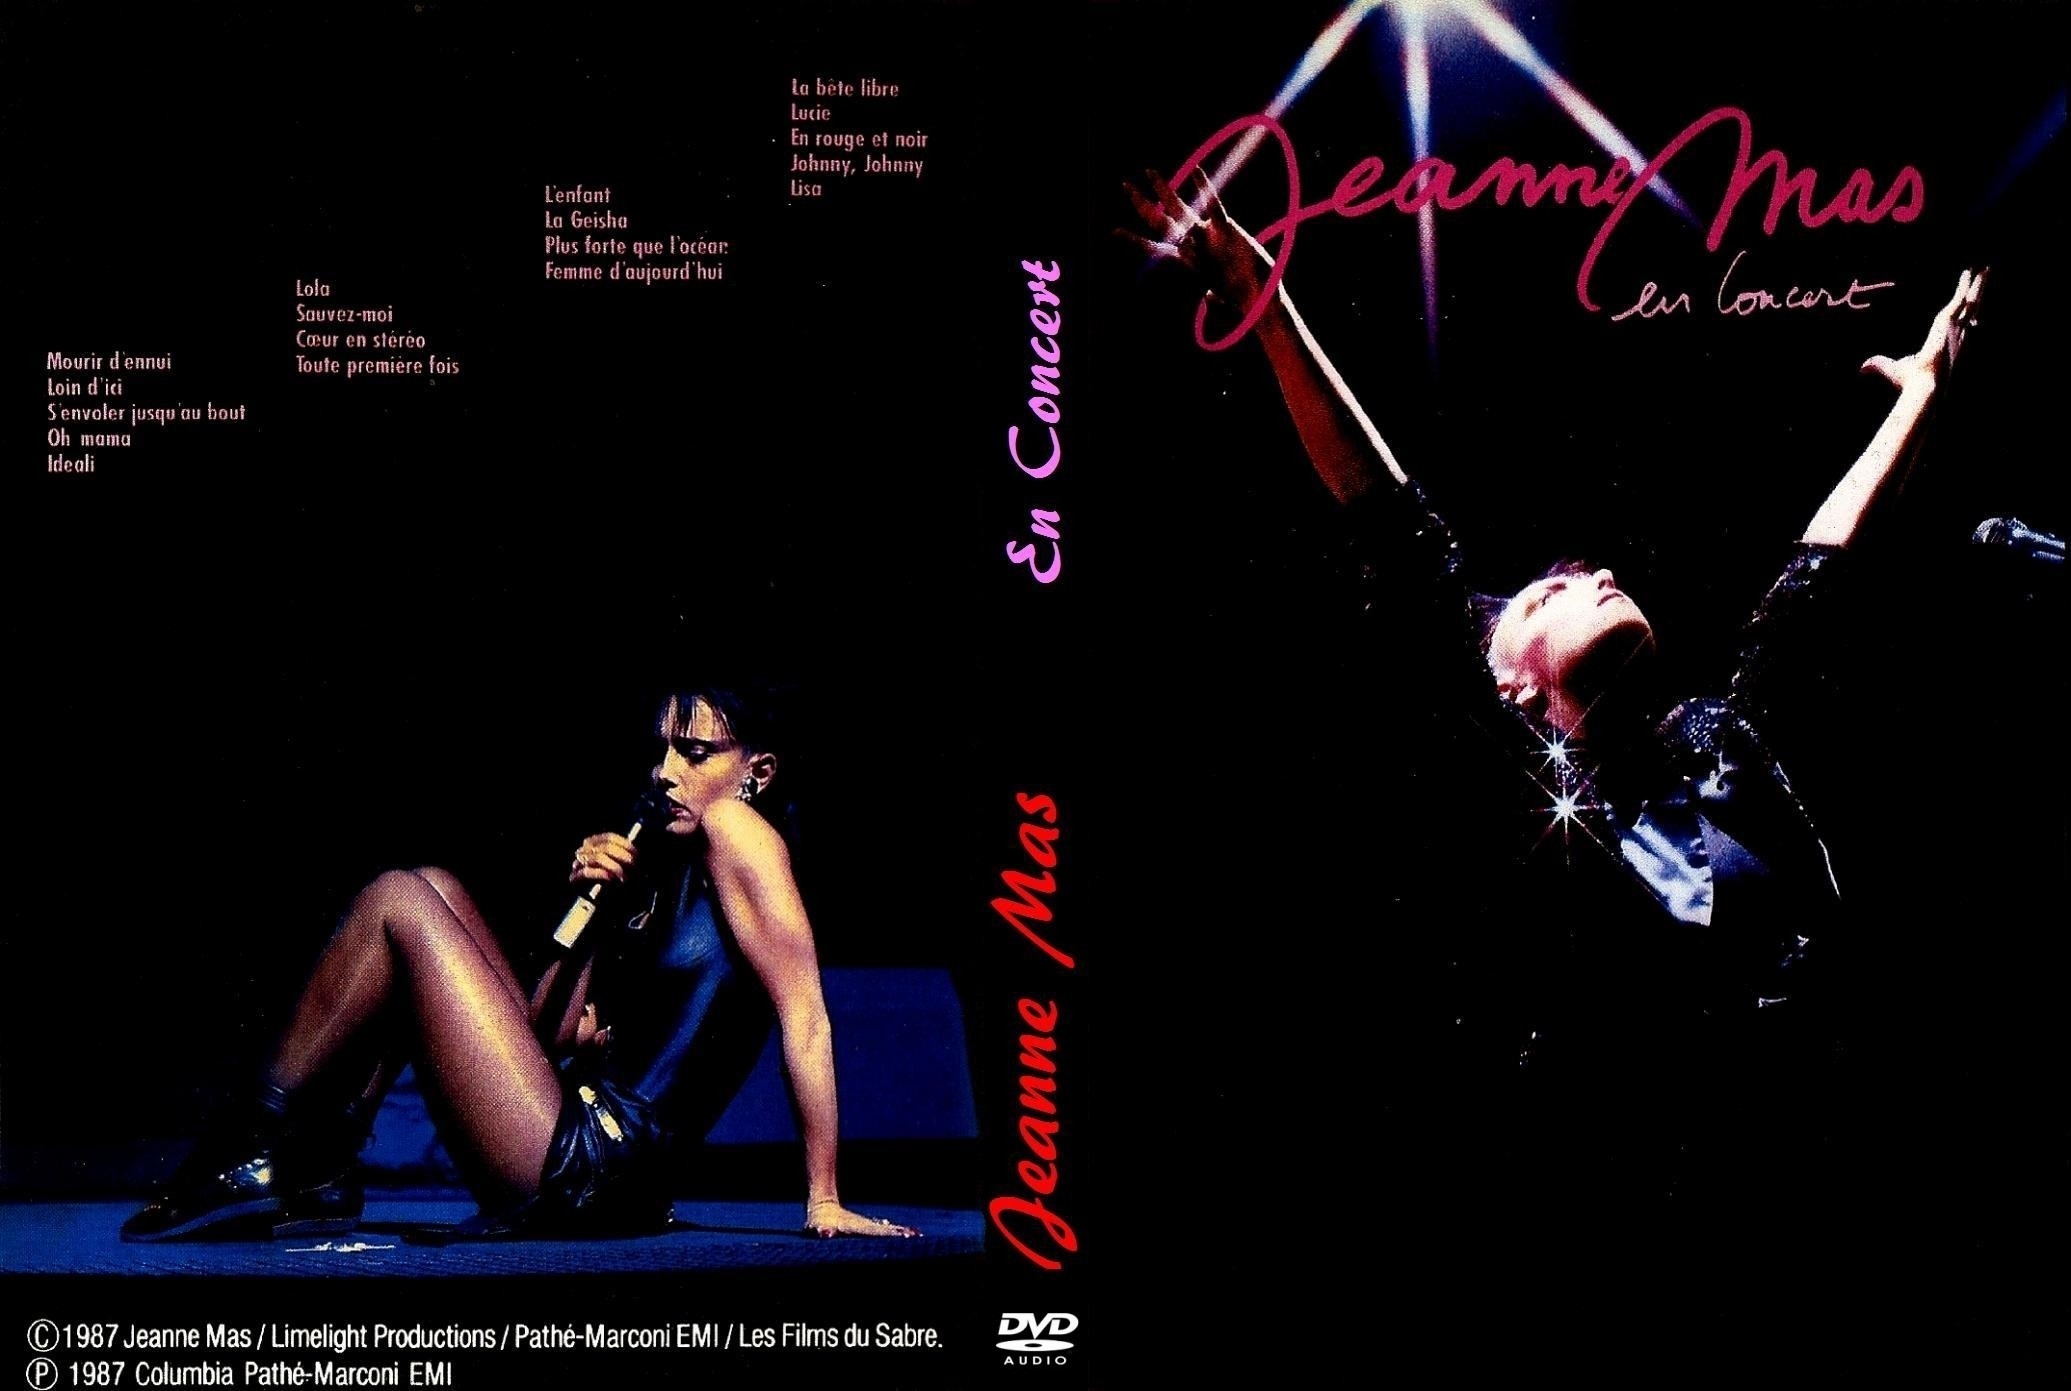 Jaquette DVD Jeanne Mas en concert Lyon 1987  